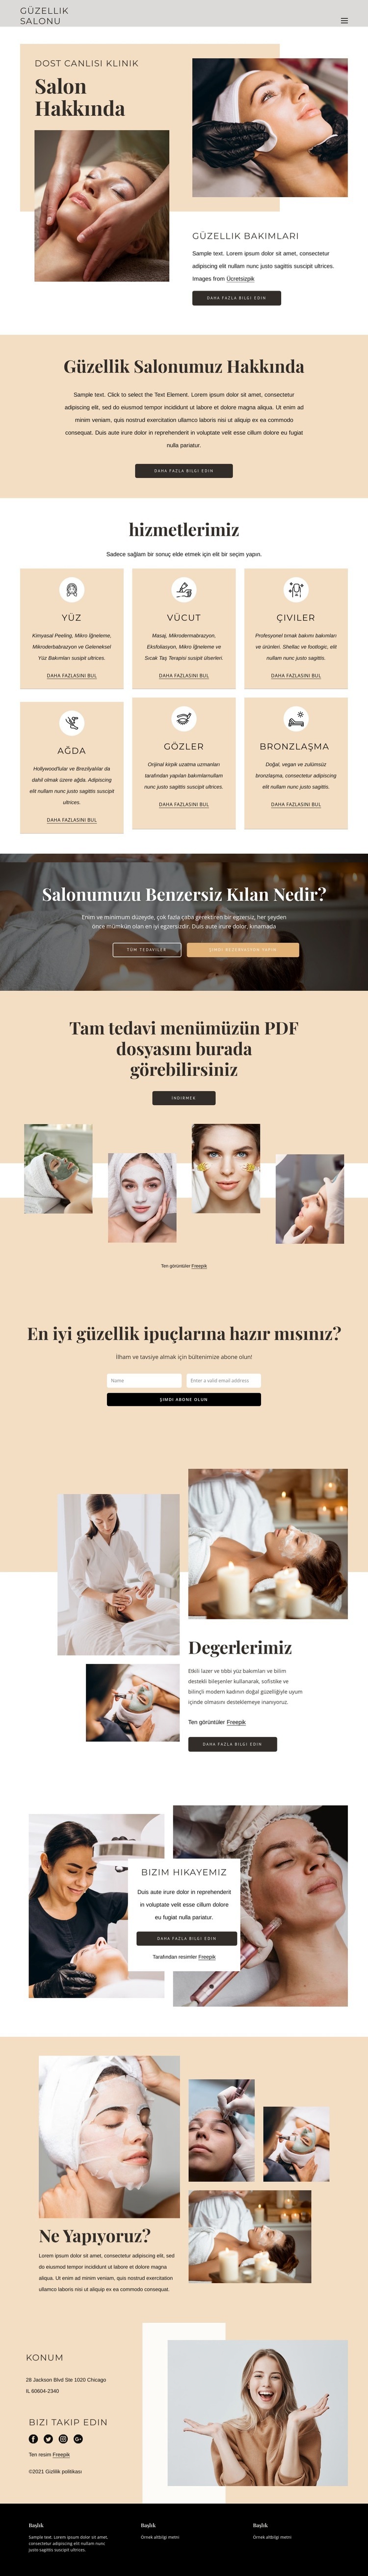 Güzellik ve estetik tedaviler Web sitesi tasarımı